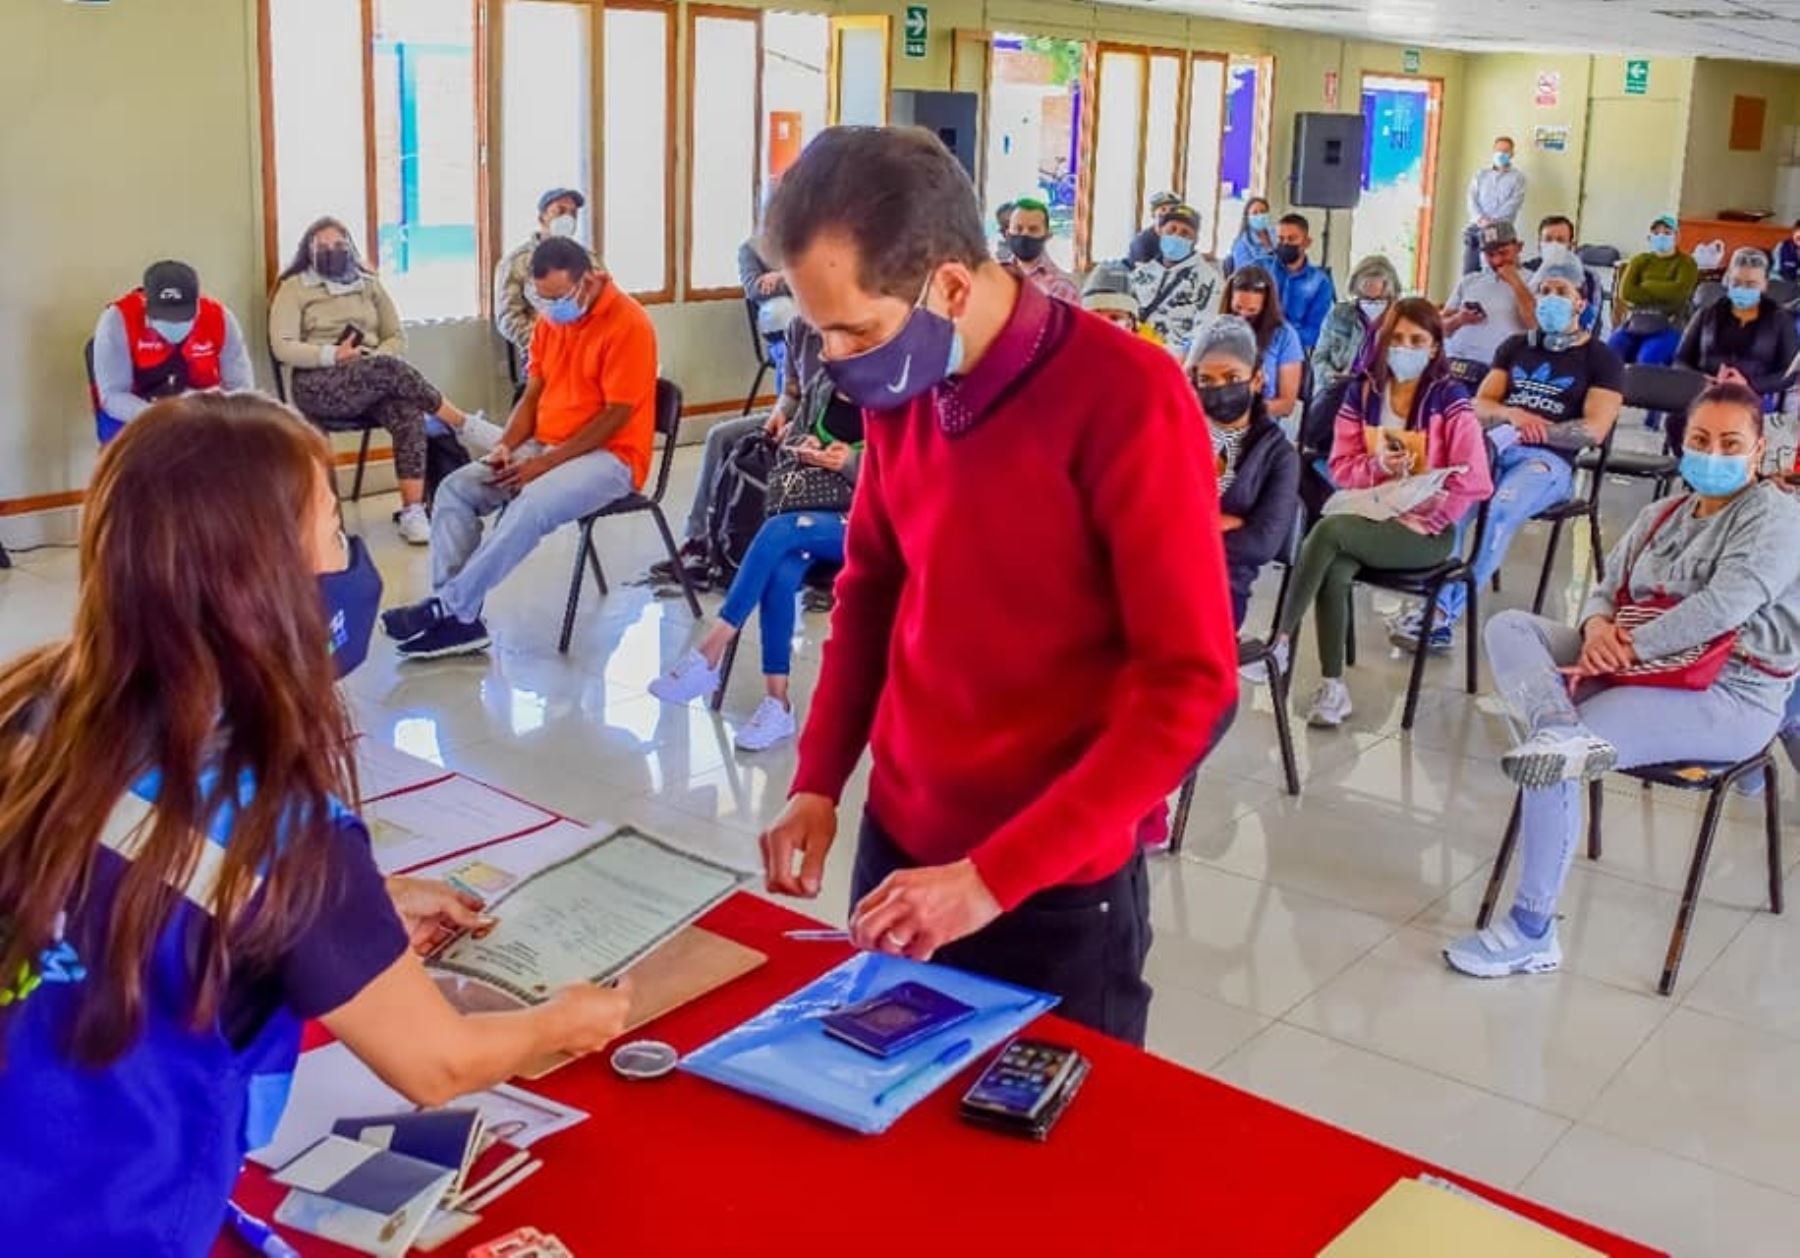 Más de 80 ciudadanos extranjeros residentes en la ciudad de Huaraz, región Áncash, formalizaron su estadía en el Perú. Foto: ANDINA/Difusión.